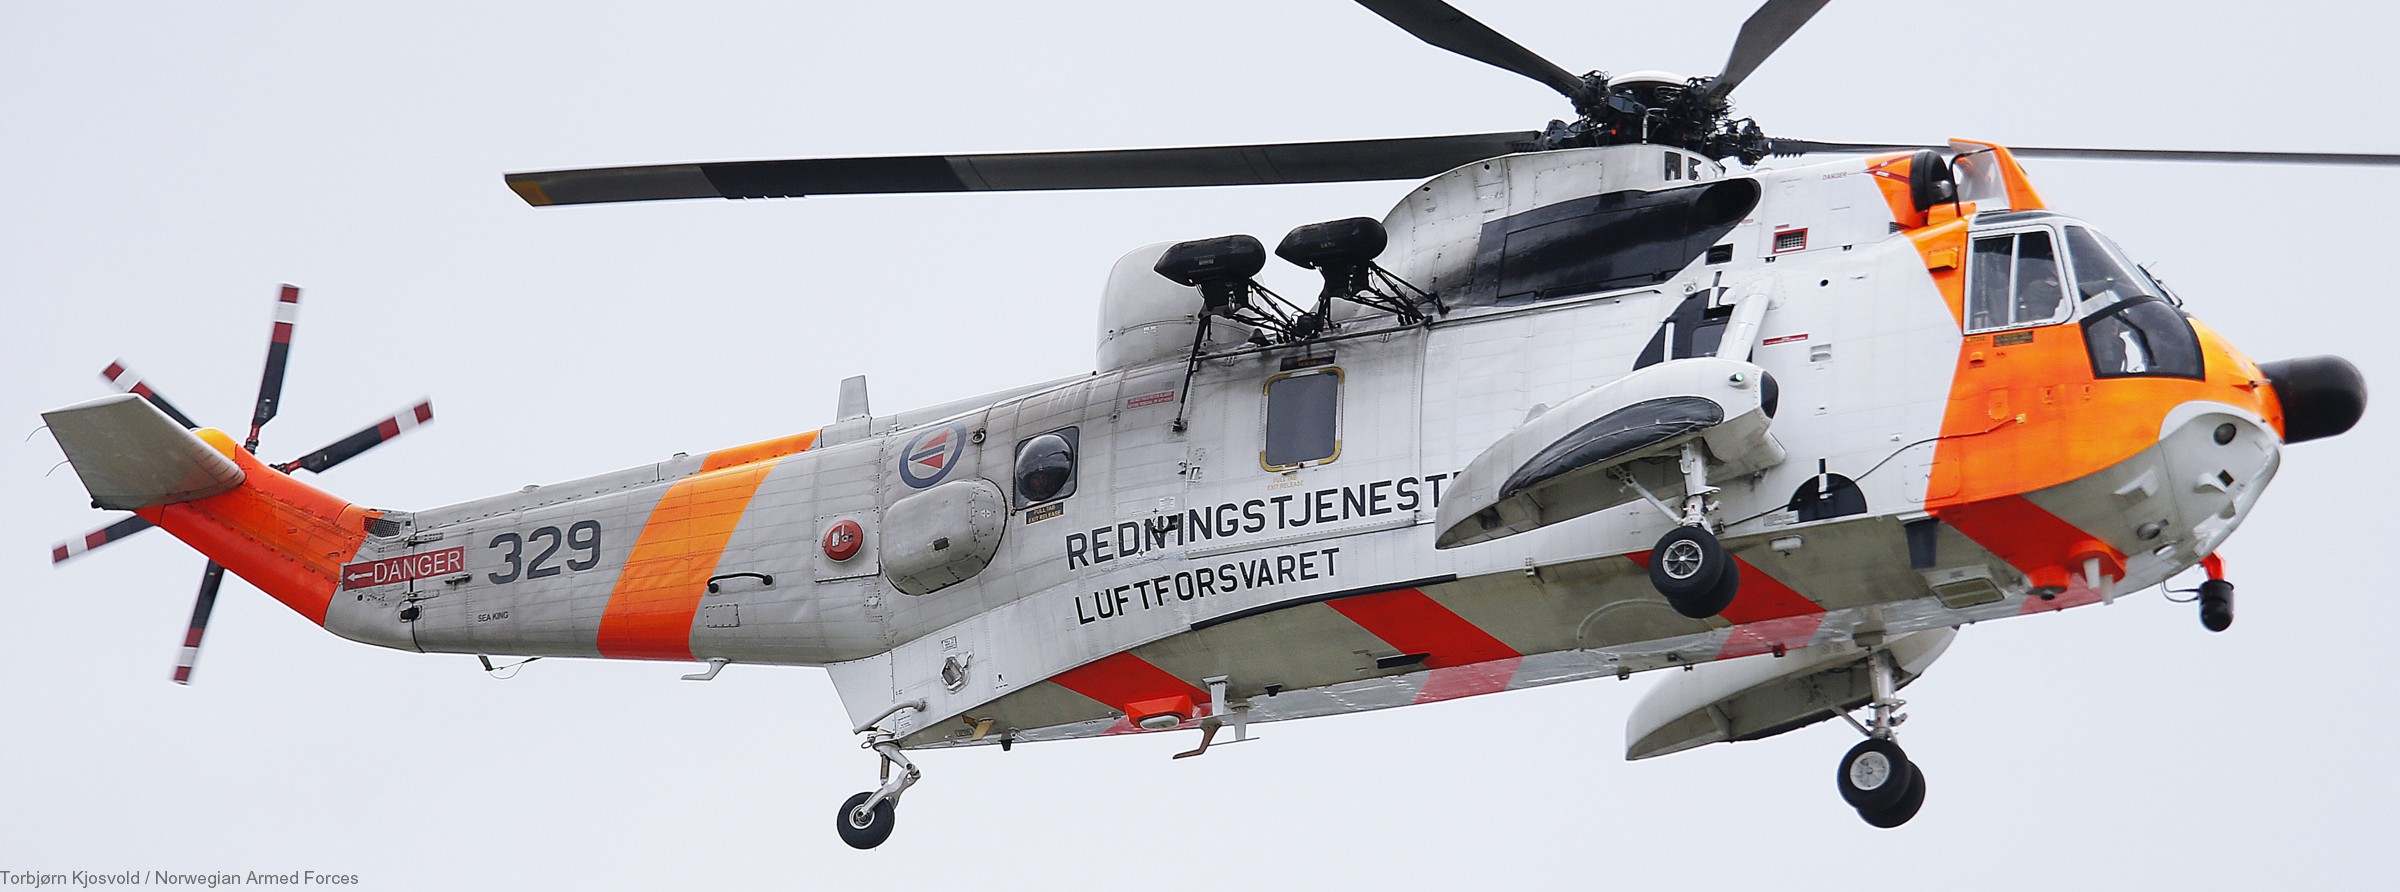 westland ws-61 sea king royal norwegian air force sar rescue 330 squadron skvadron luftforsvaret 329 03